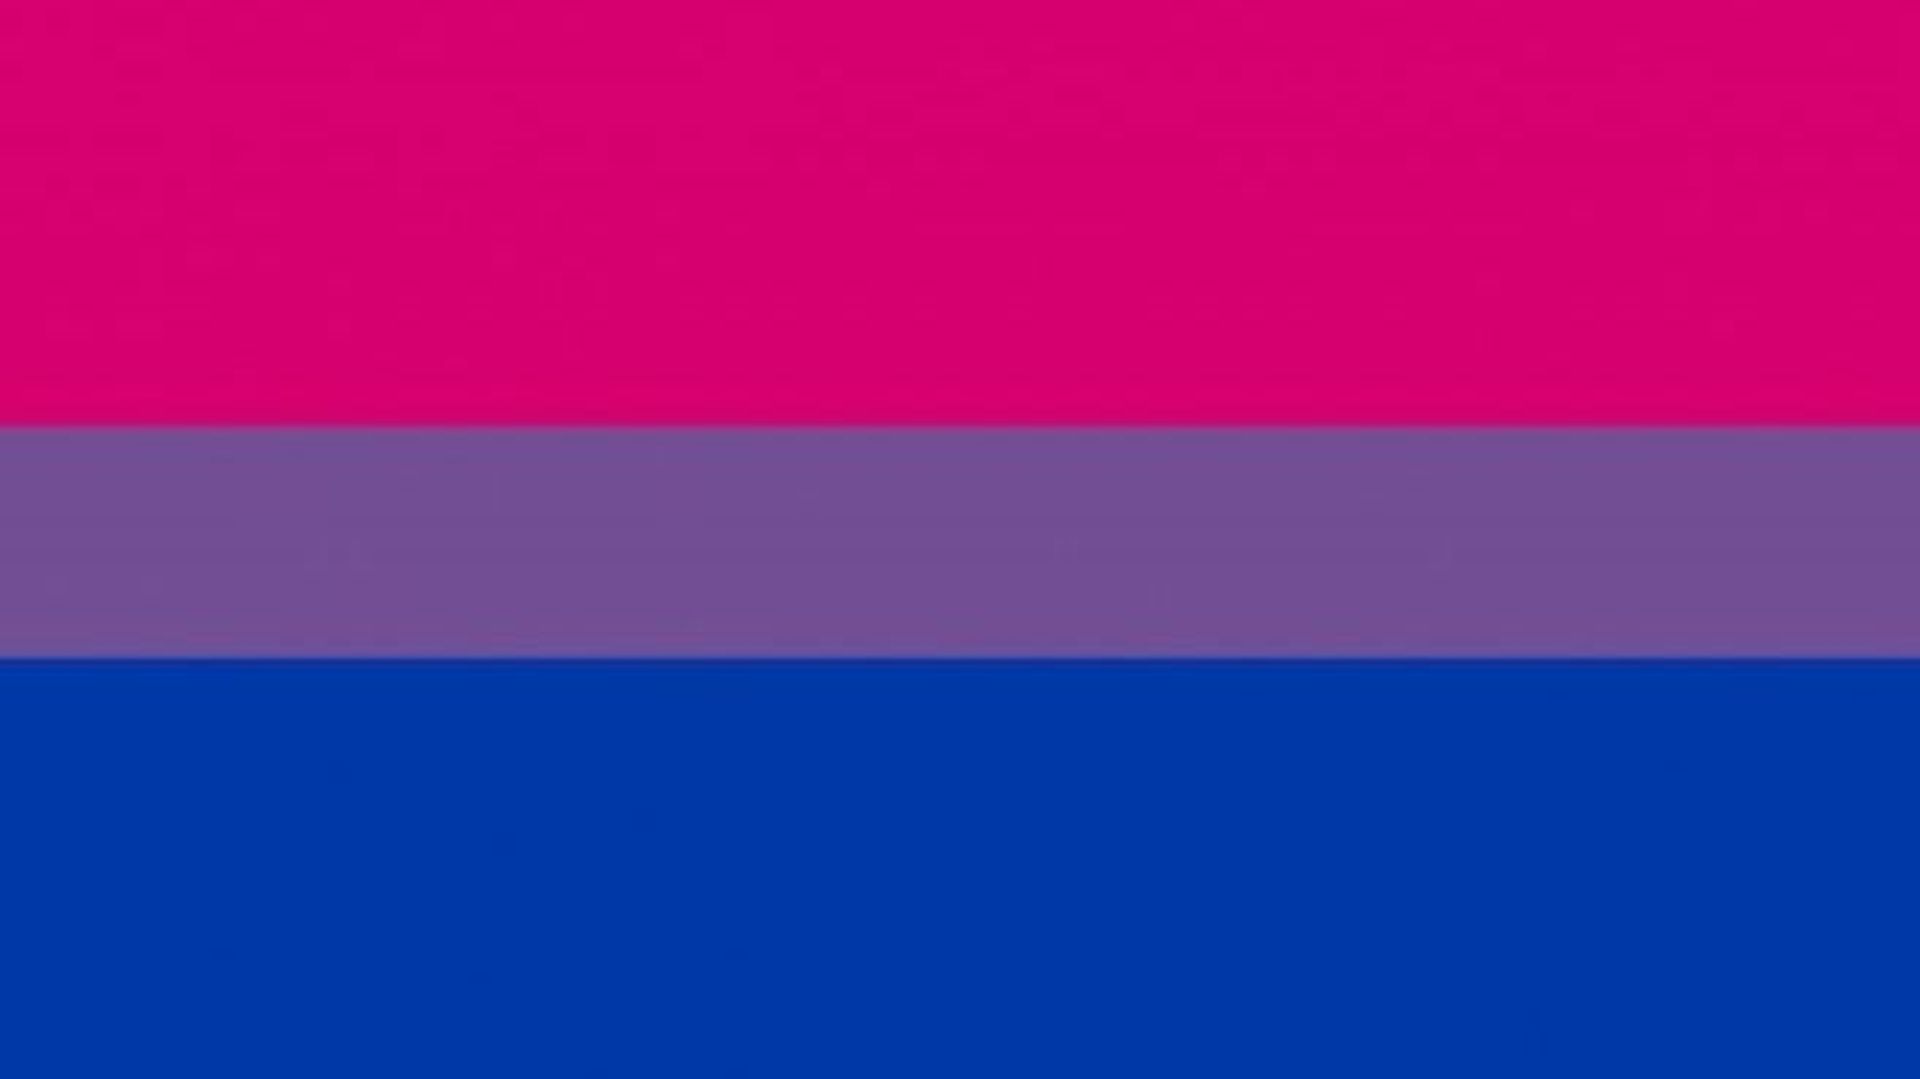 Le drapeau représentant les personnes bisexuelles